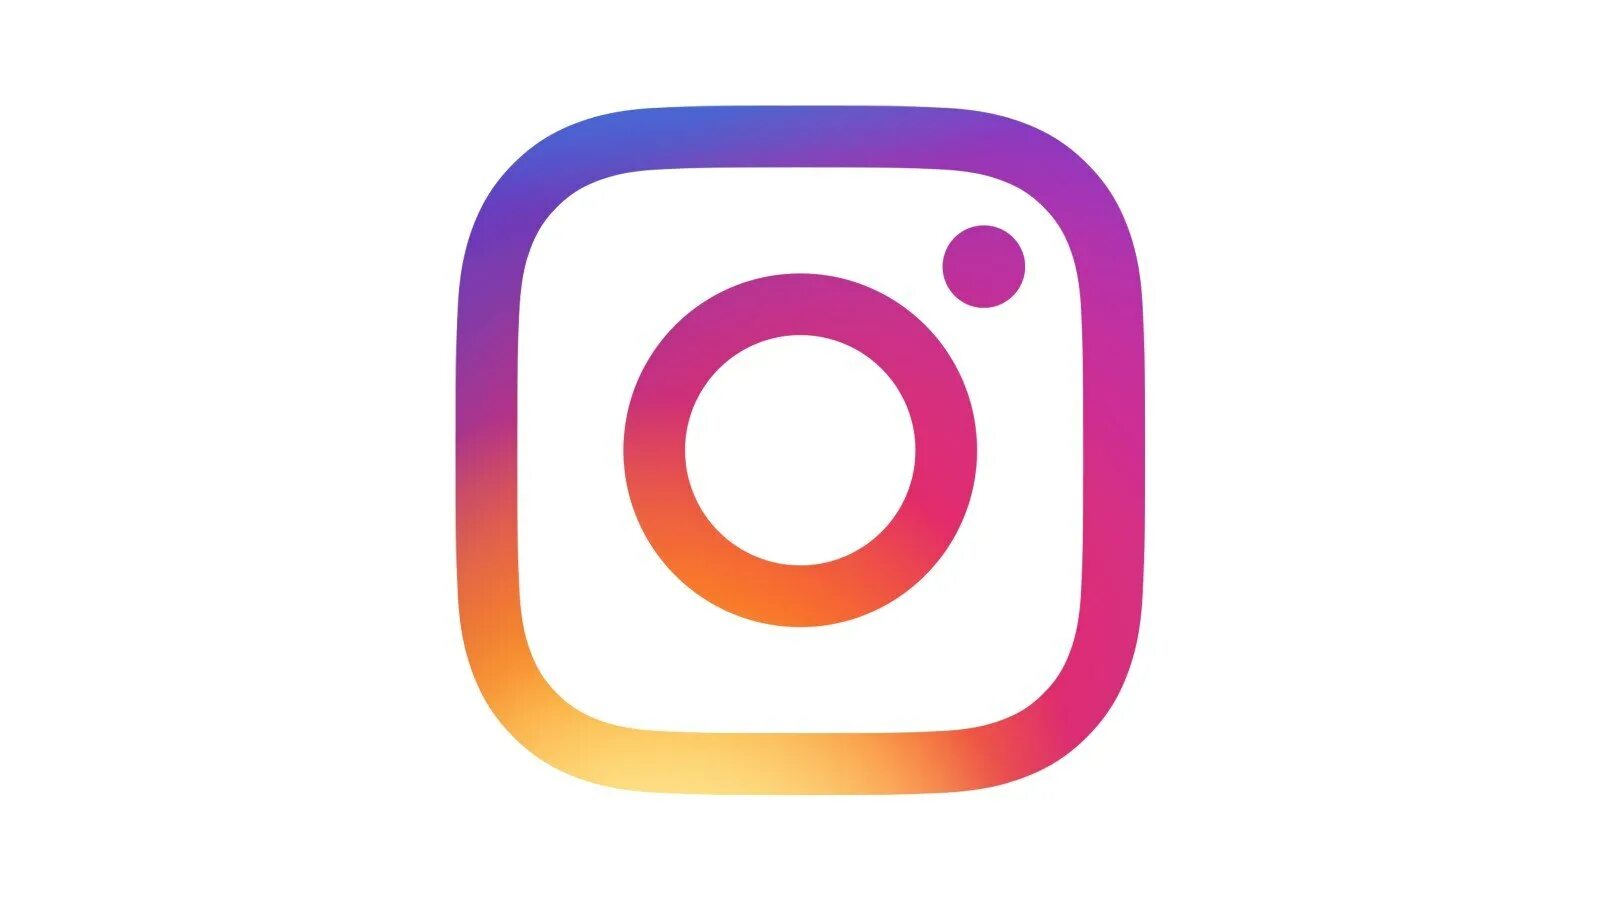 Прозрачный фон в инстаграм. Логотип Instagram. Значок Инстаграм. Инстаграмм без фона. Логотип Инстаграм на прозрачном фоне.